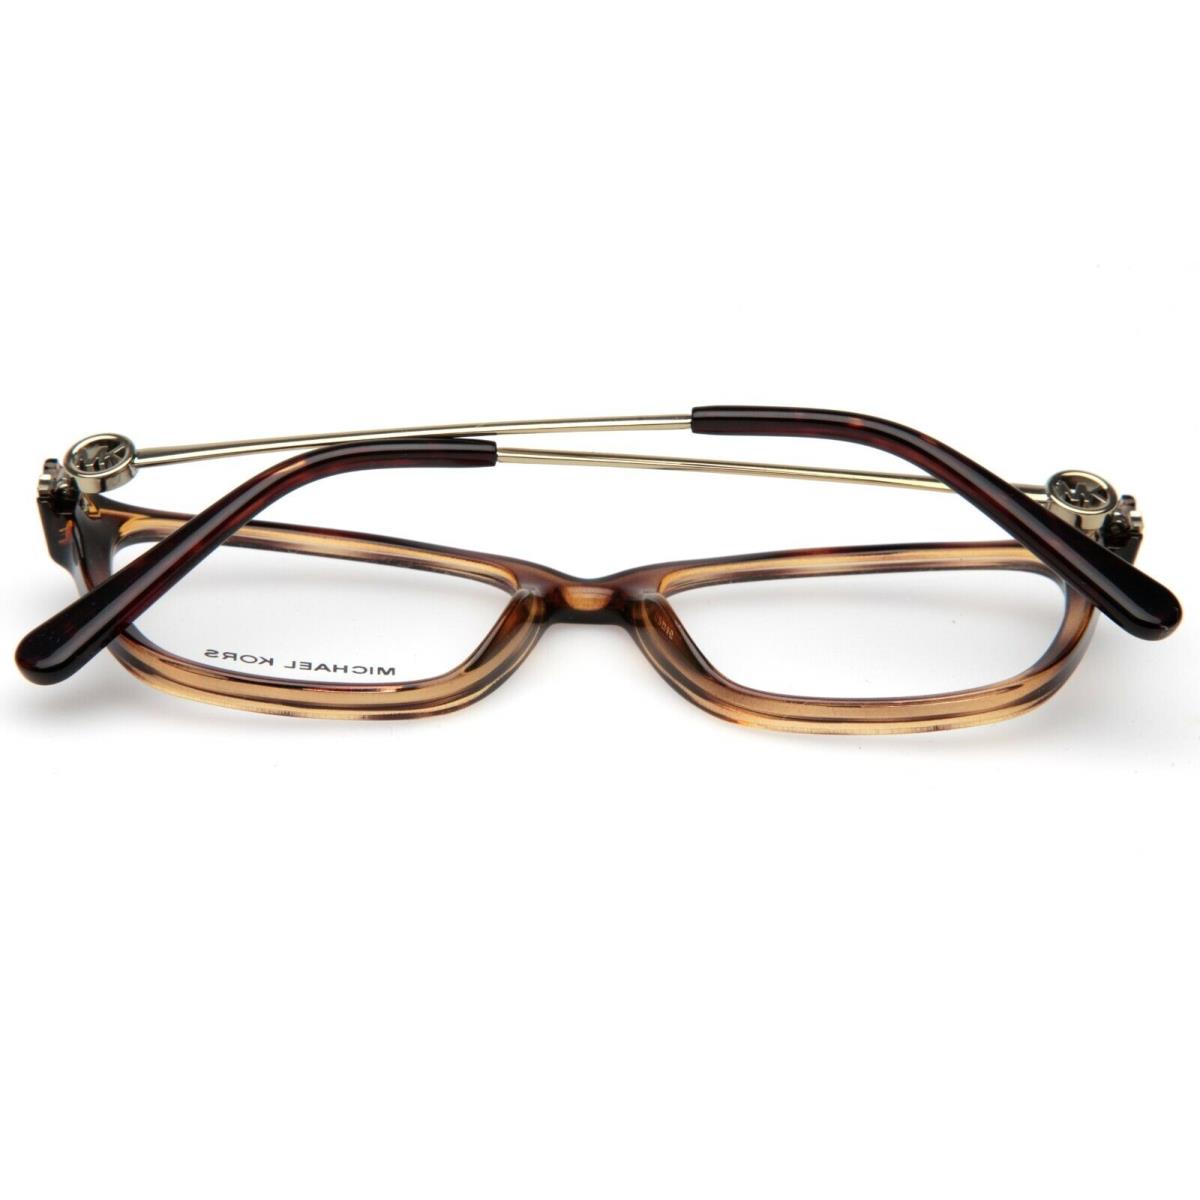 Michael Kors eyeglasses  - Frame: 6